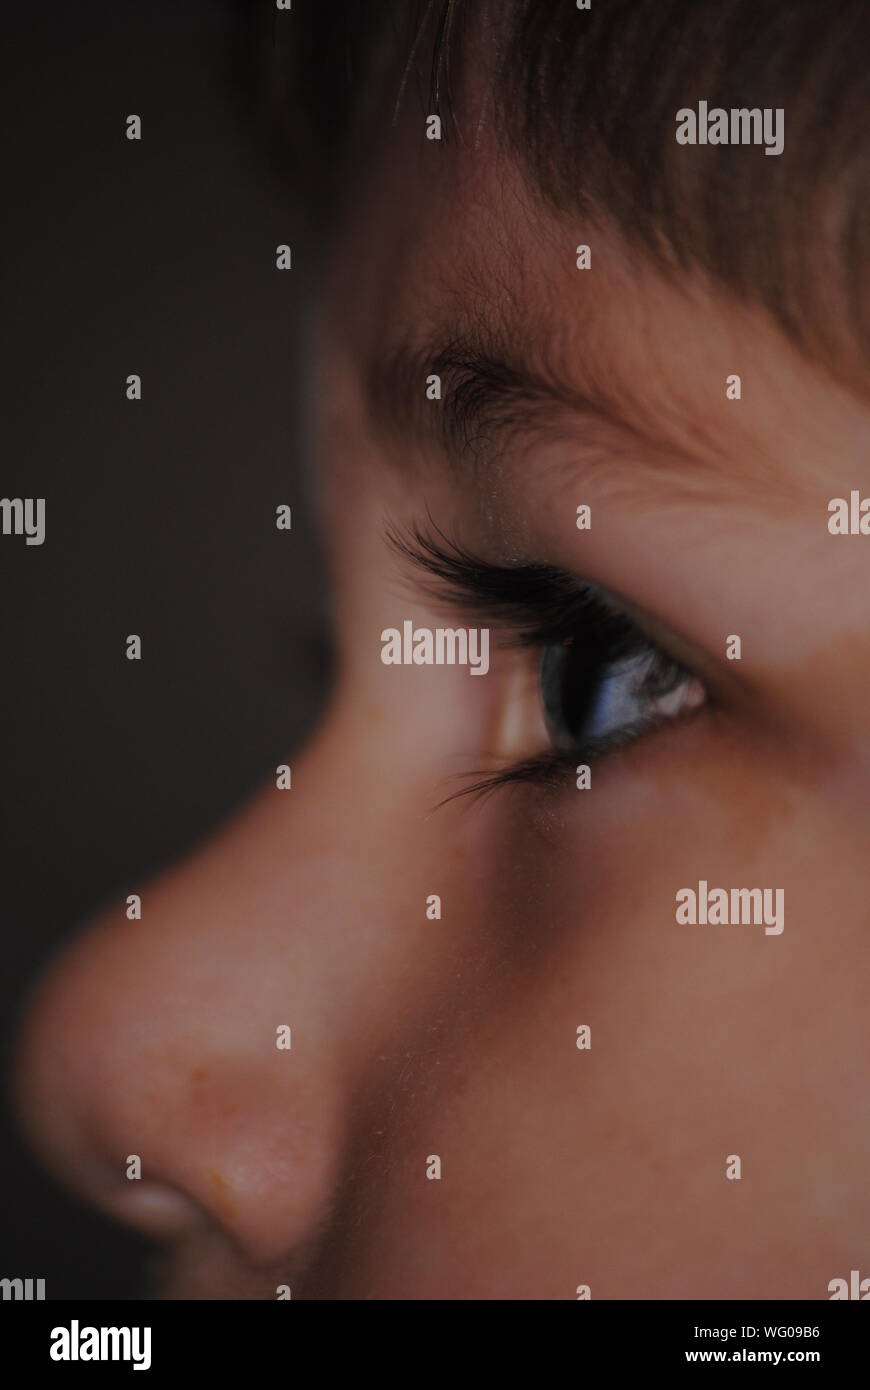 Close-up Of Boy Eye Against Black Background Stock Photo